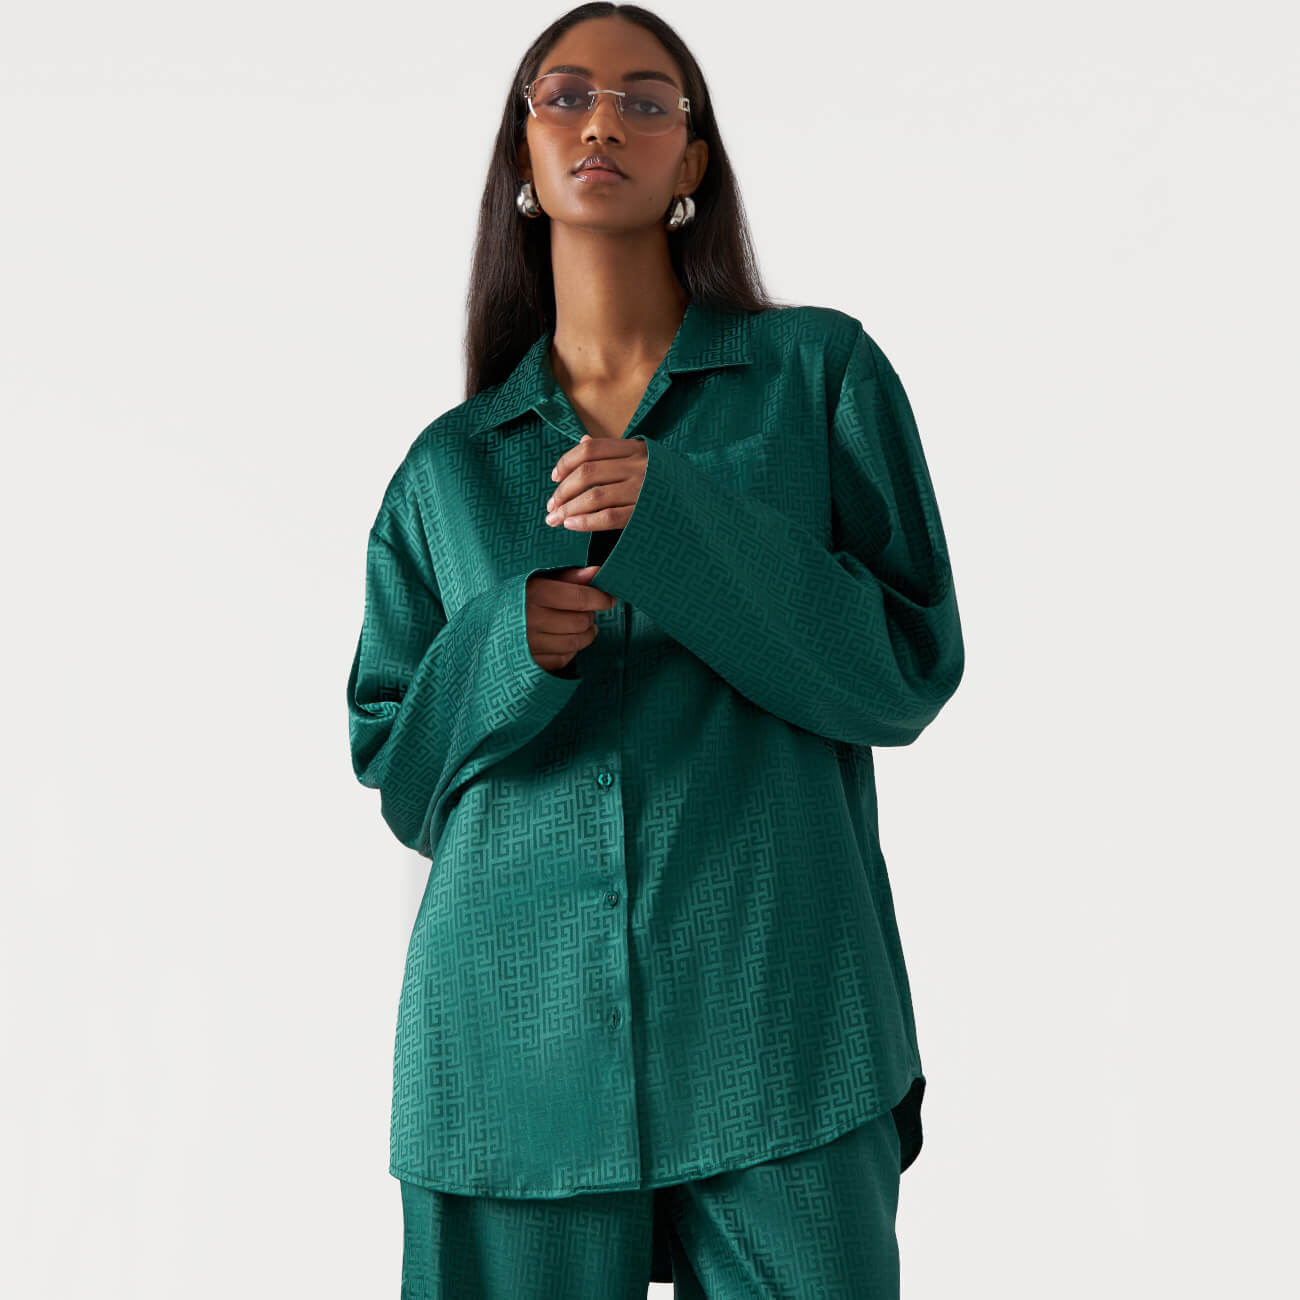 Рубашка женская, р. M, с длинным рукавом, полиэстер, зеленая, Жаккардовый узор, Agnia